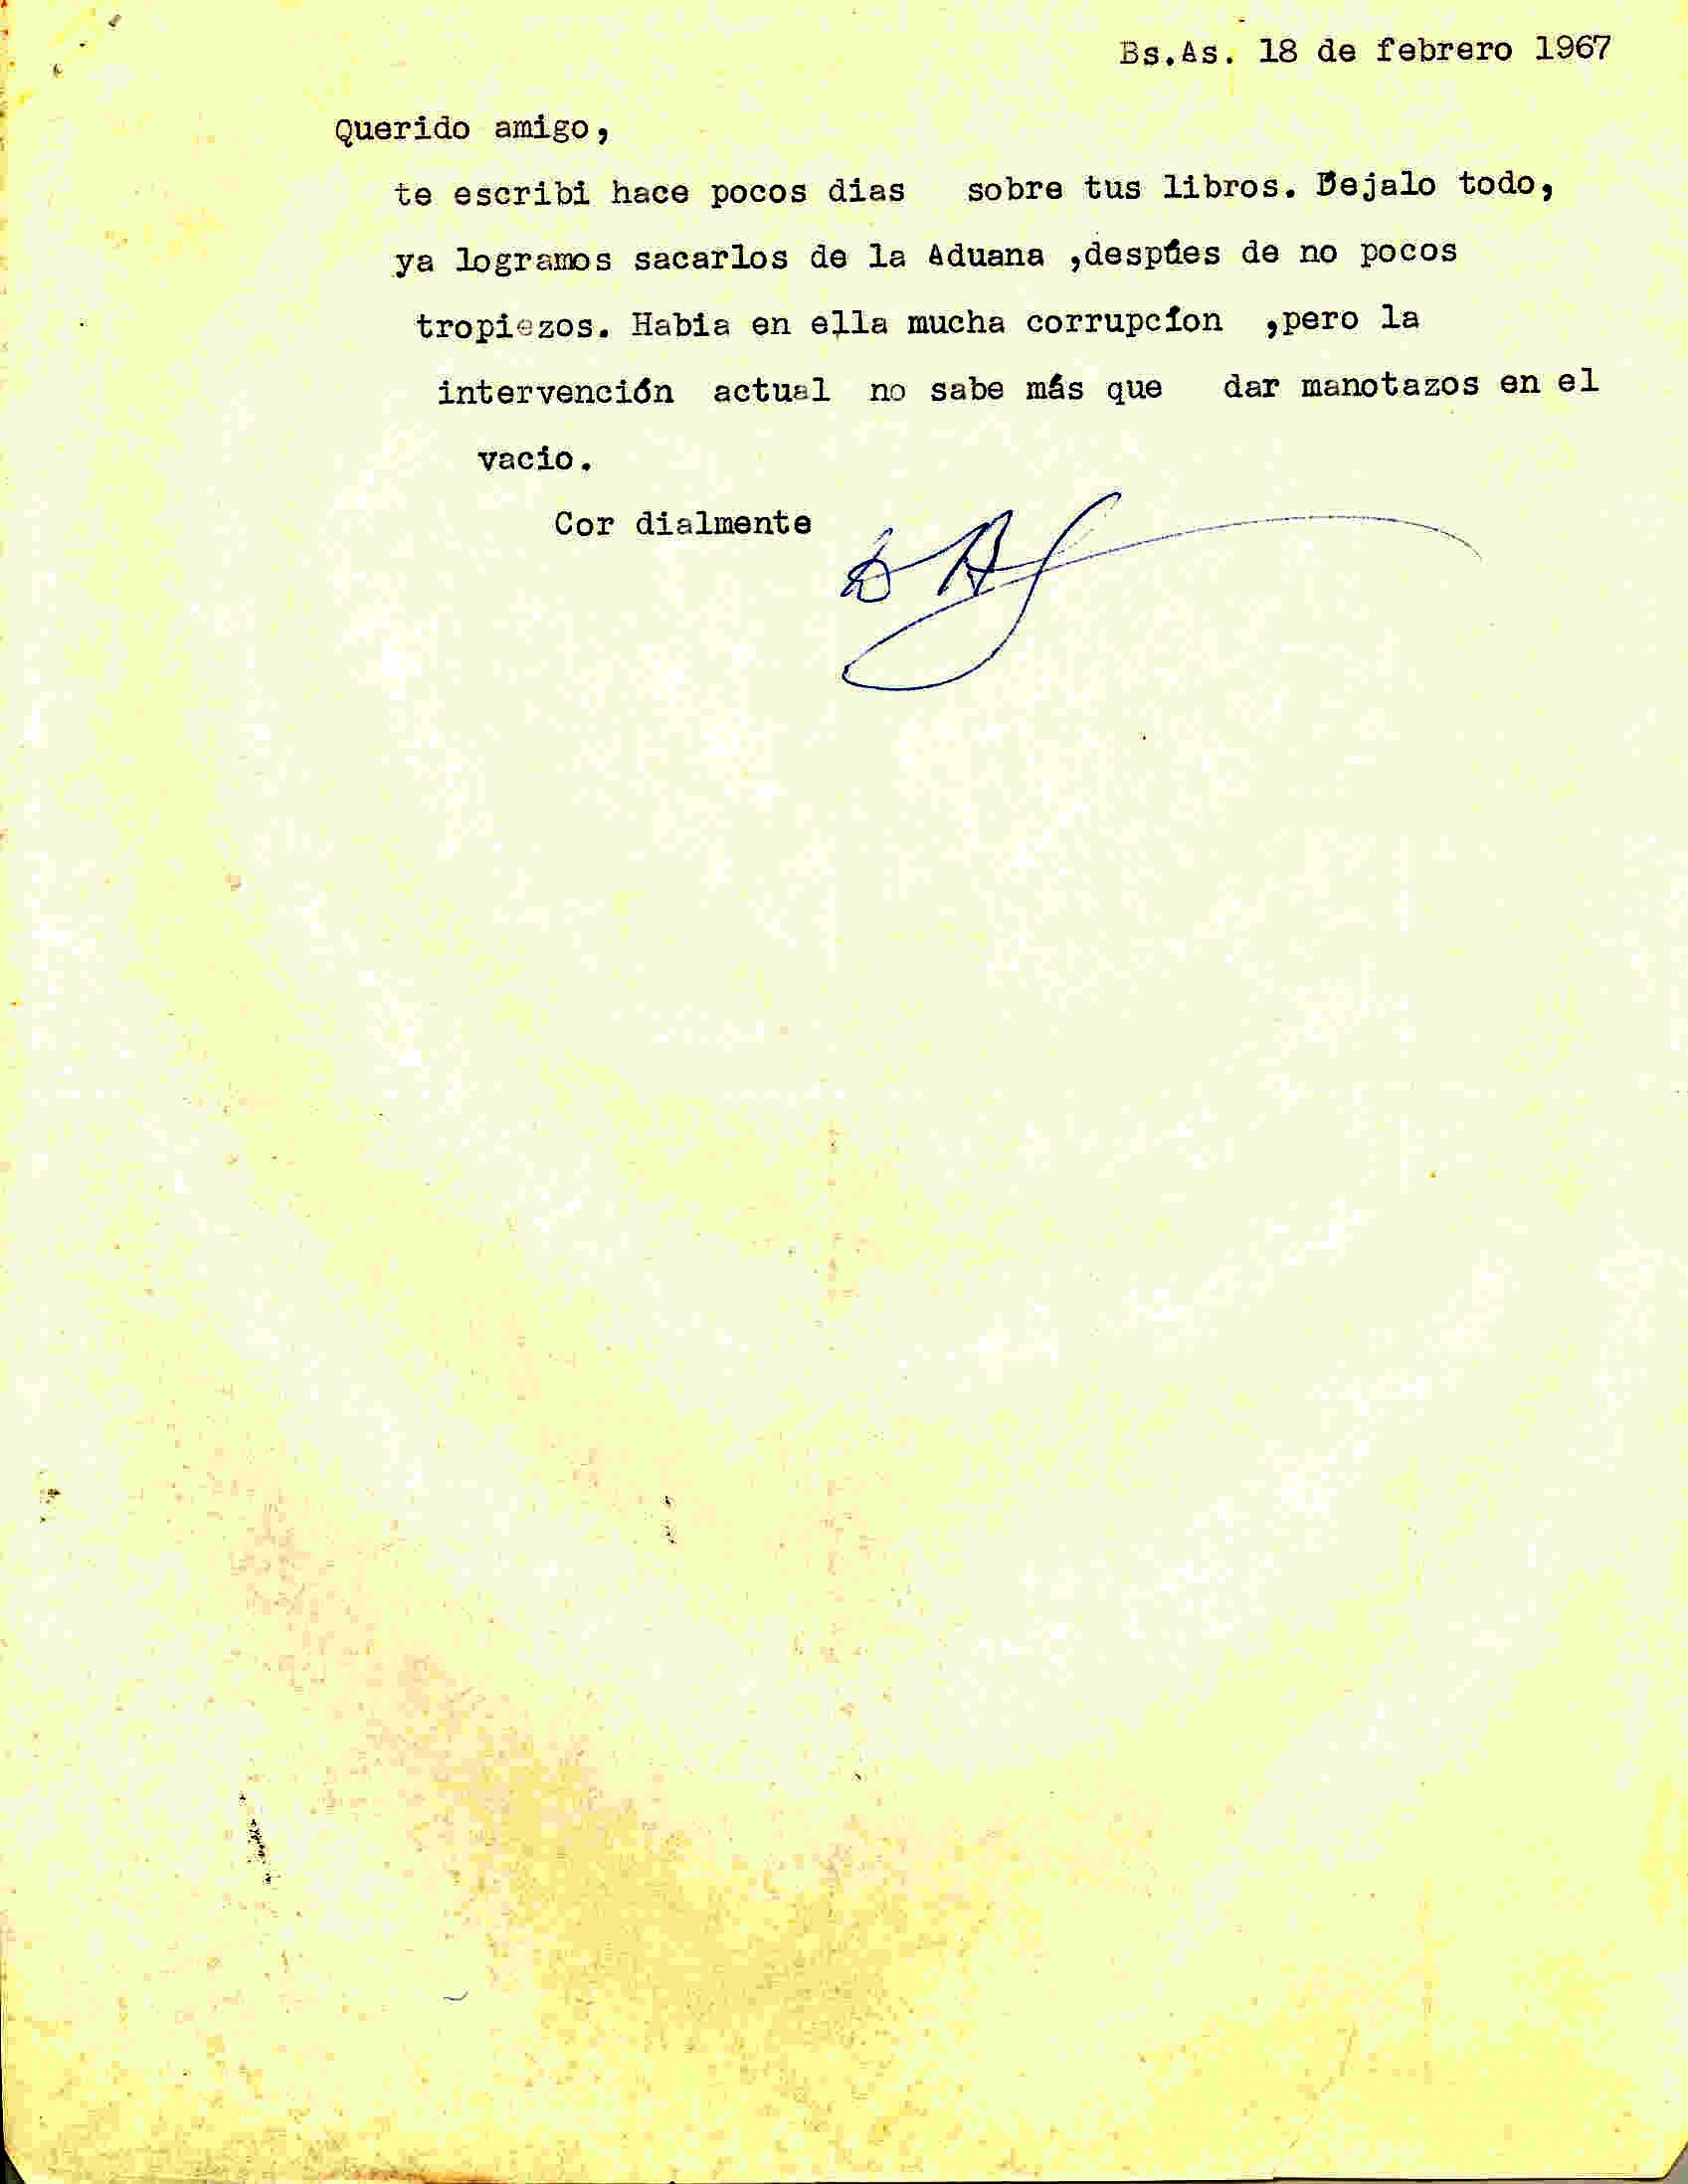 Carta de Diego Abad de Santillán comunicando que los libros de López los han sacado de la Aduana.